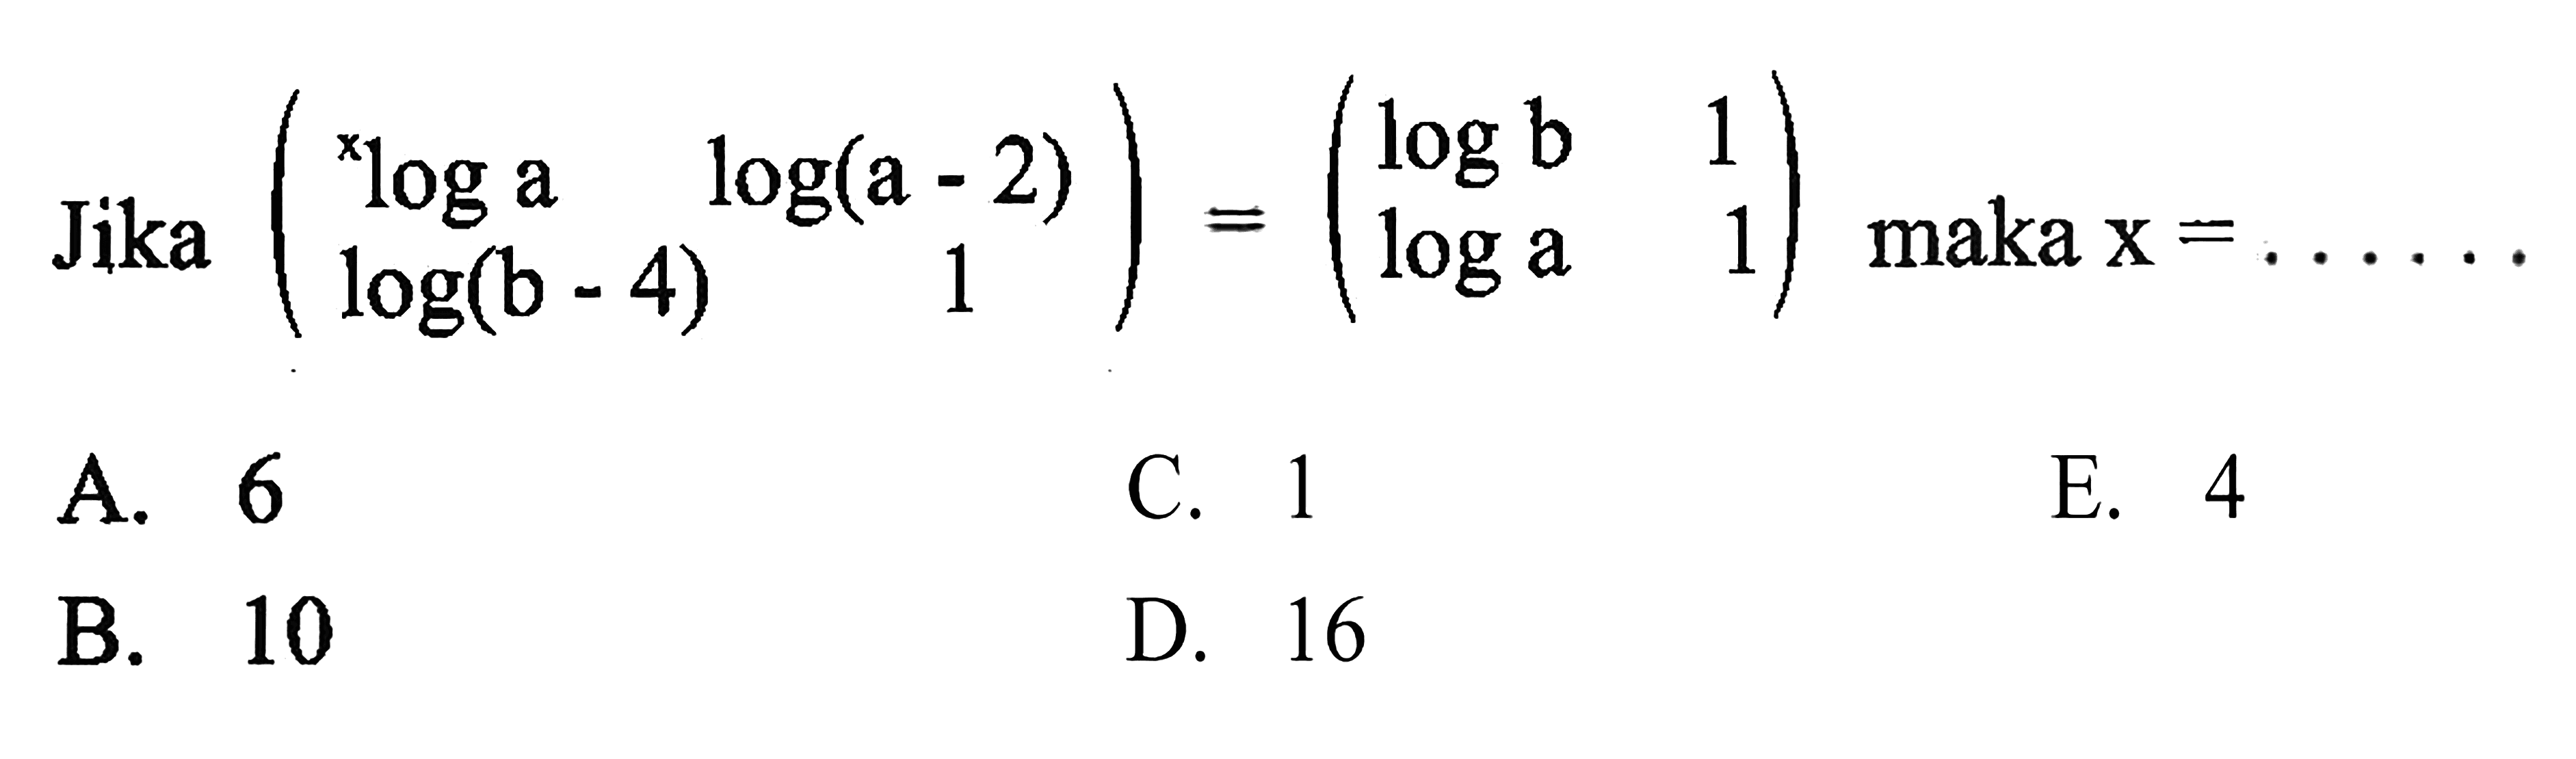 Jika (bloga log(a-2) log(b-4) 1) = (logb 1 loga 1) maka X =